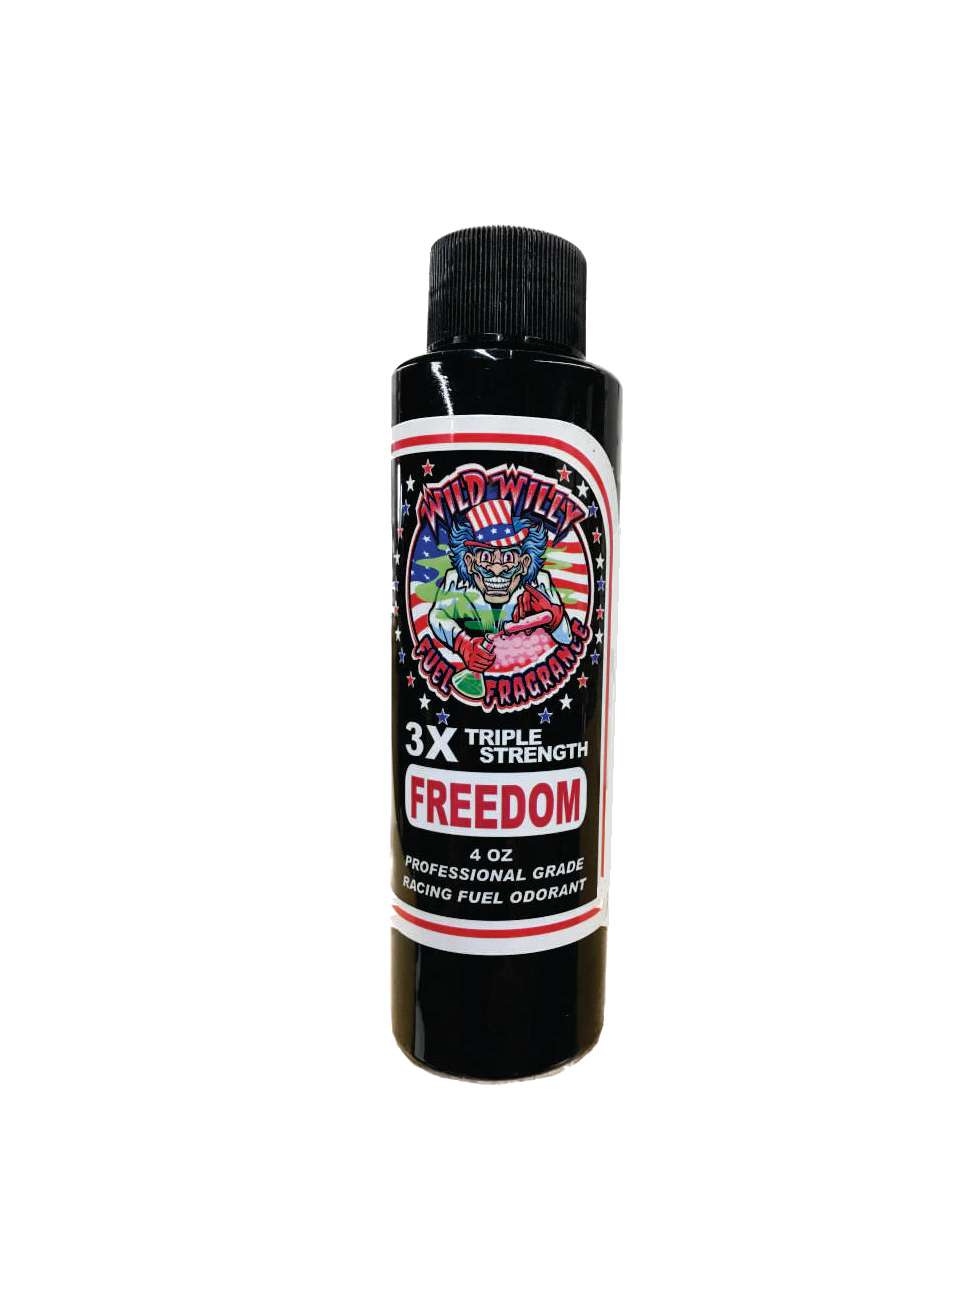 FREEDOM - Wild Willy Fuel Fragrance - 3X Triple Strength!